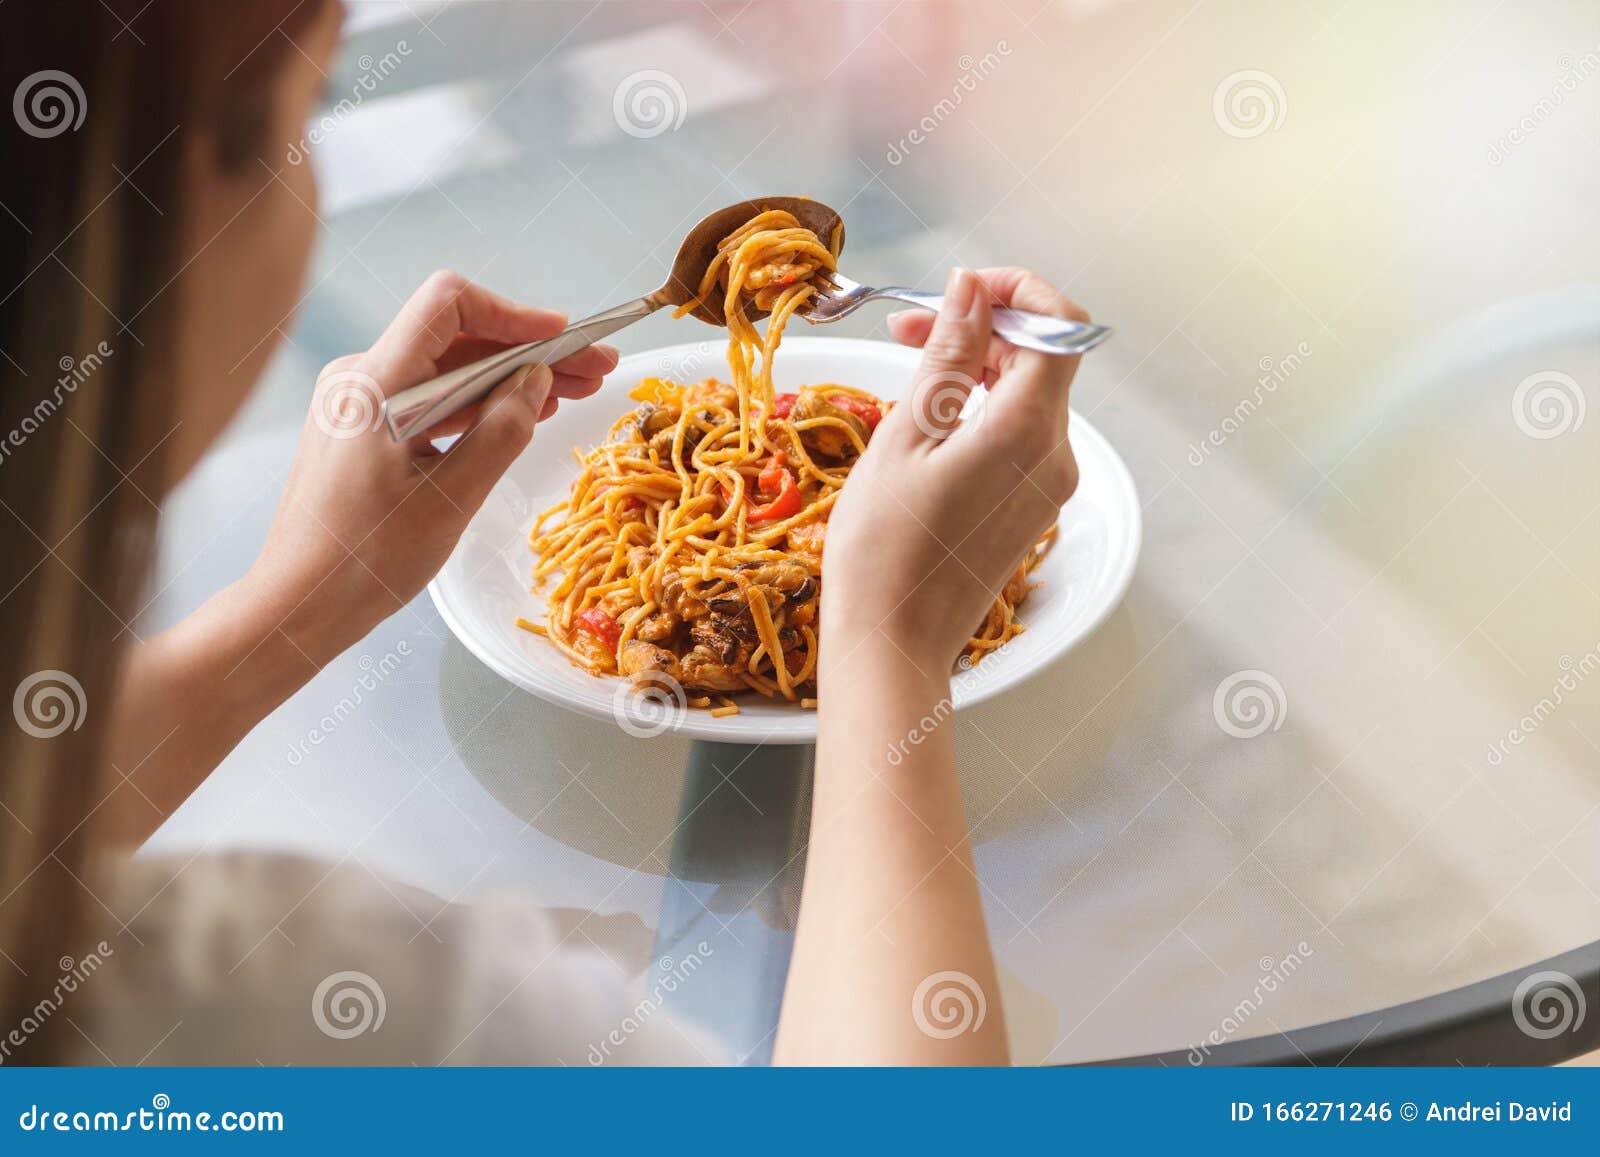 عملية الشراء بوق يهلك mangiare spaghetti con cucchiaio e forchetta -  nooutfit.com